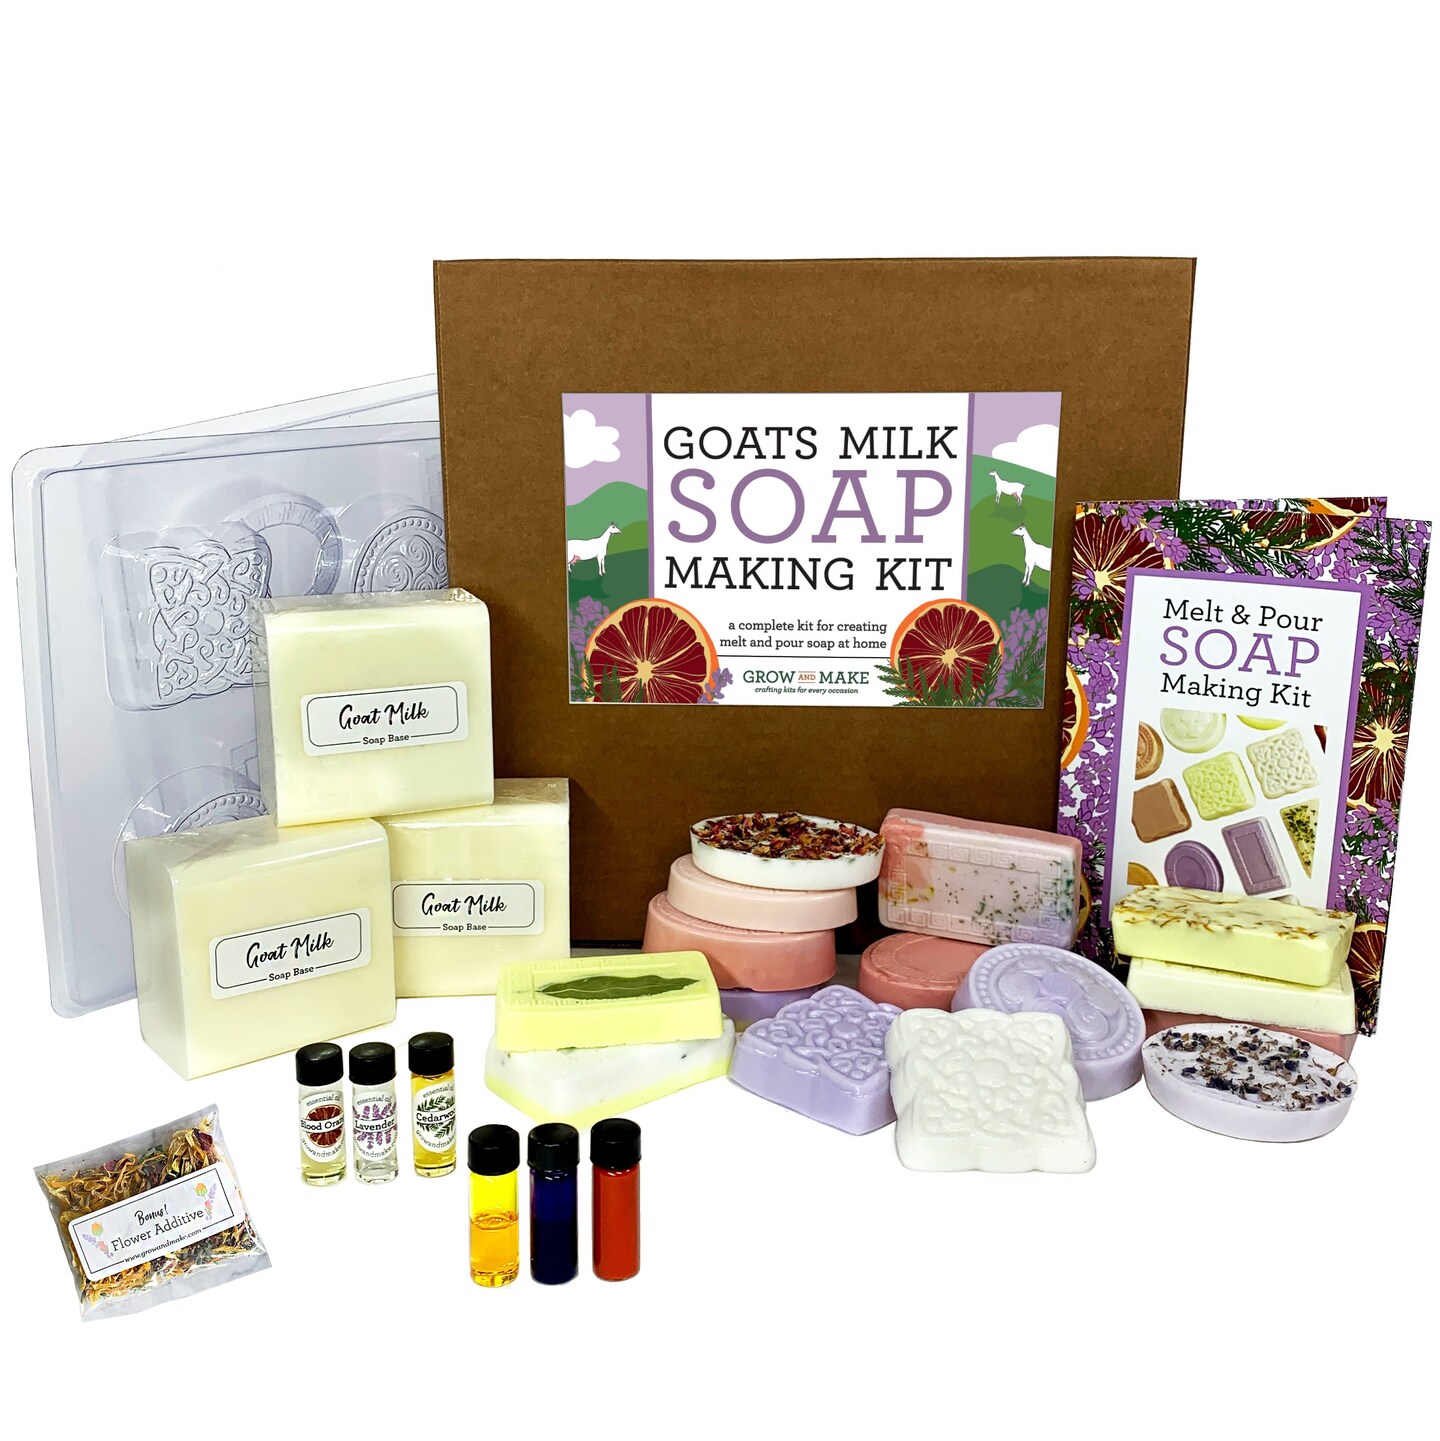 Soap making kit lot crafts - arts & crafts - by owner - sale - craigslist